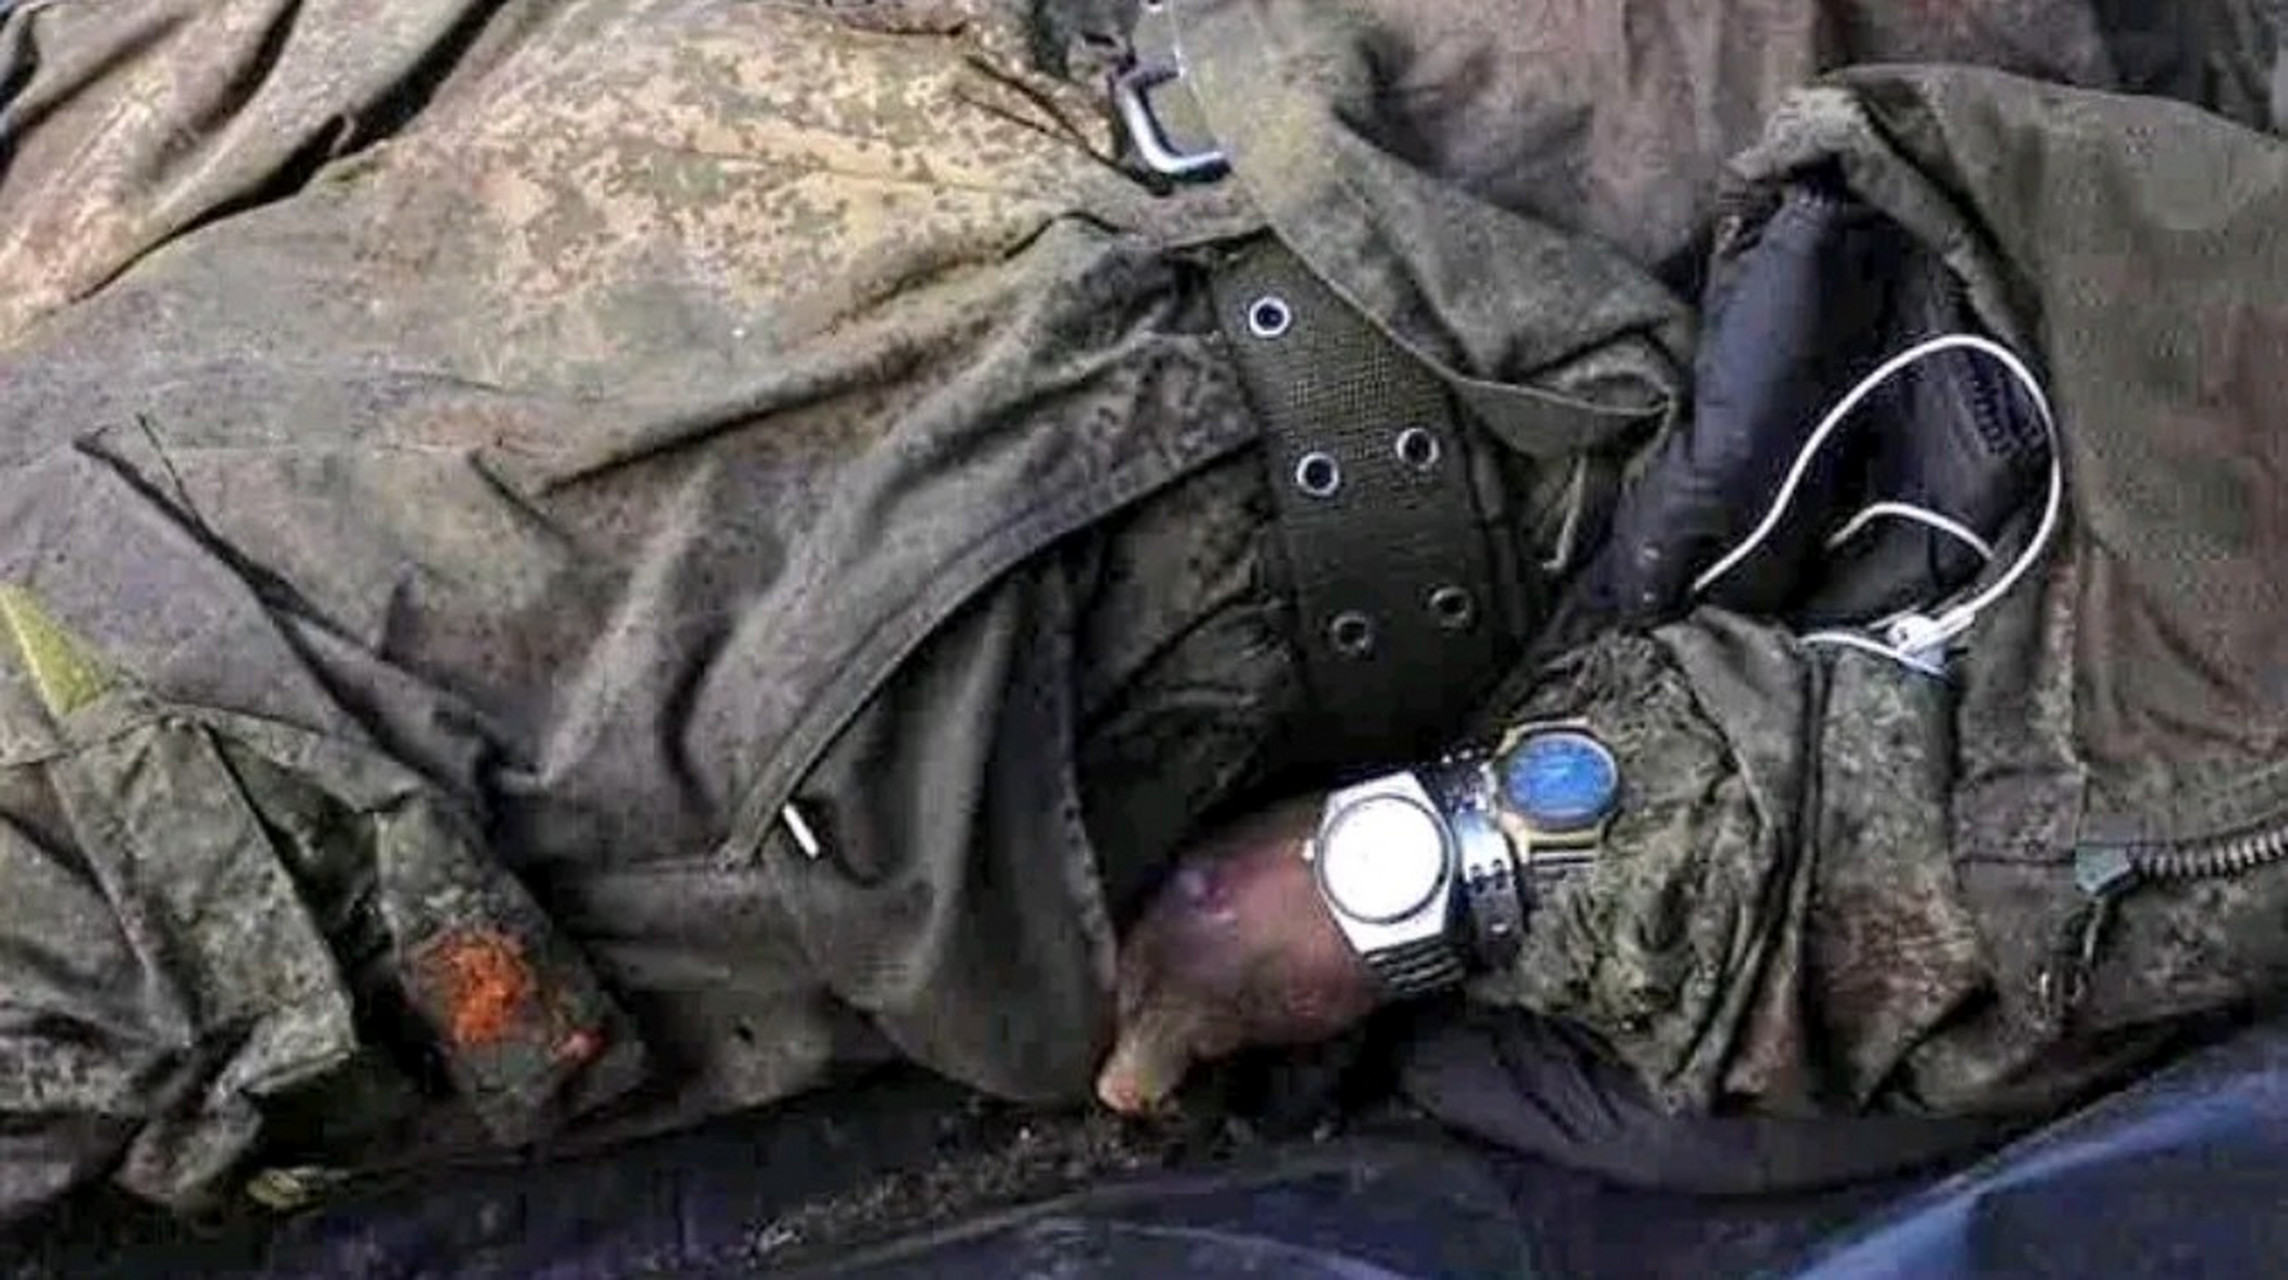 近日,在俄乌战场上,一名阵亡的俄军士兵的照片引发了人们的关注